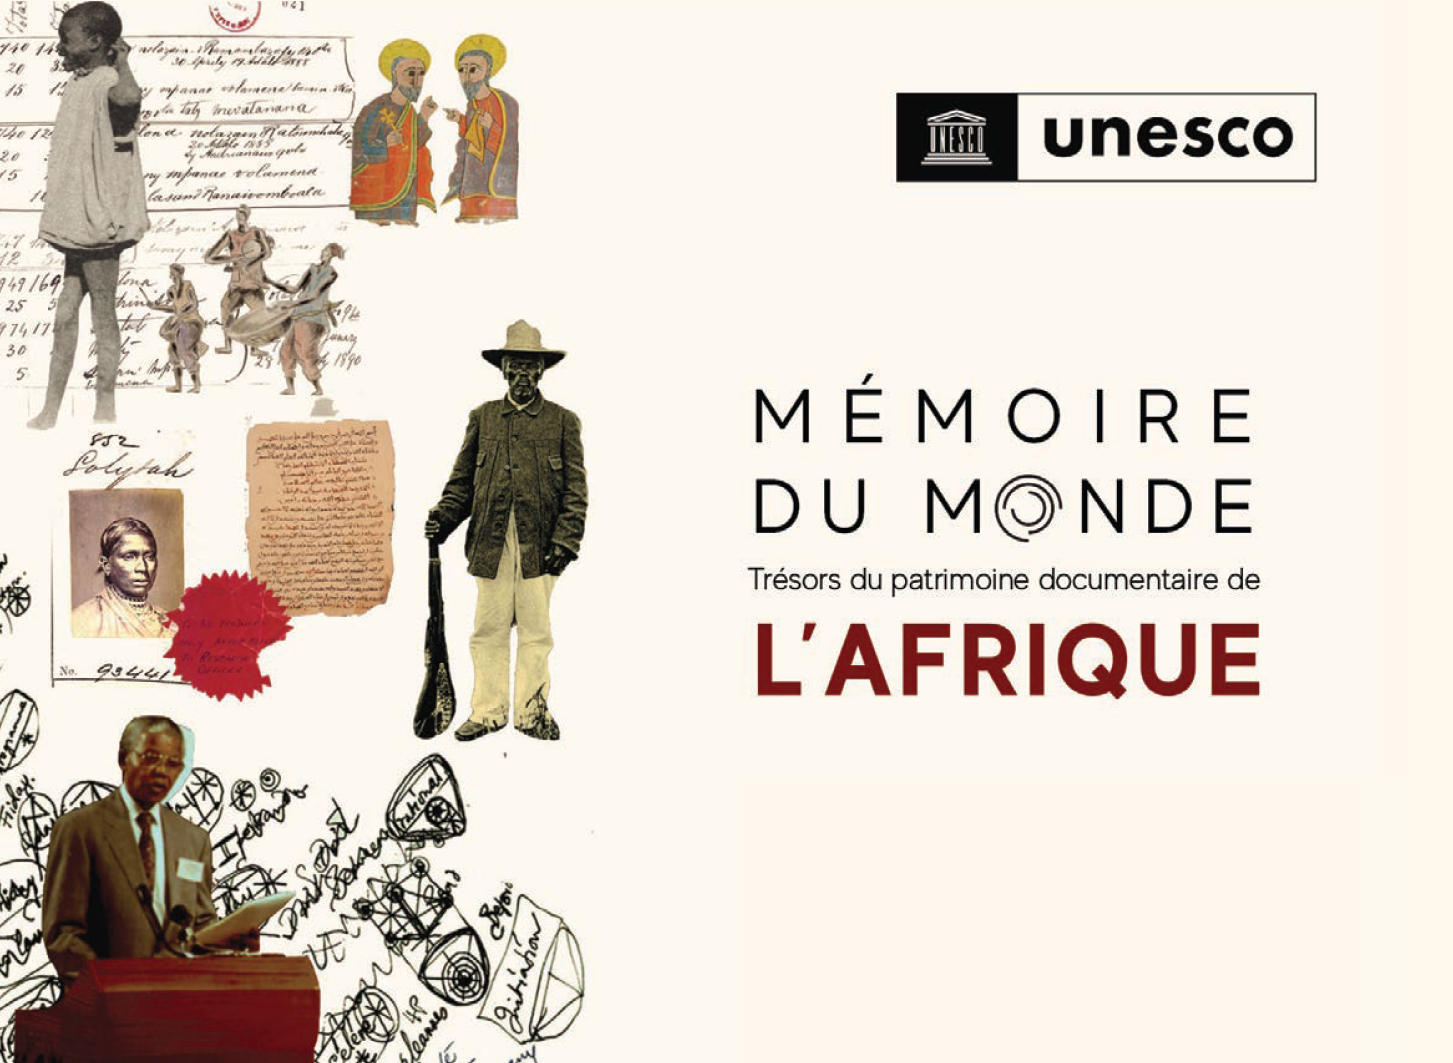 Couverture de l'ouvrage de l'UNESCO consacré aux trésors du patrimoine documentaire de l'Afrique